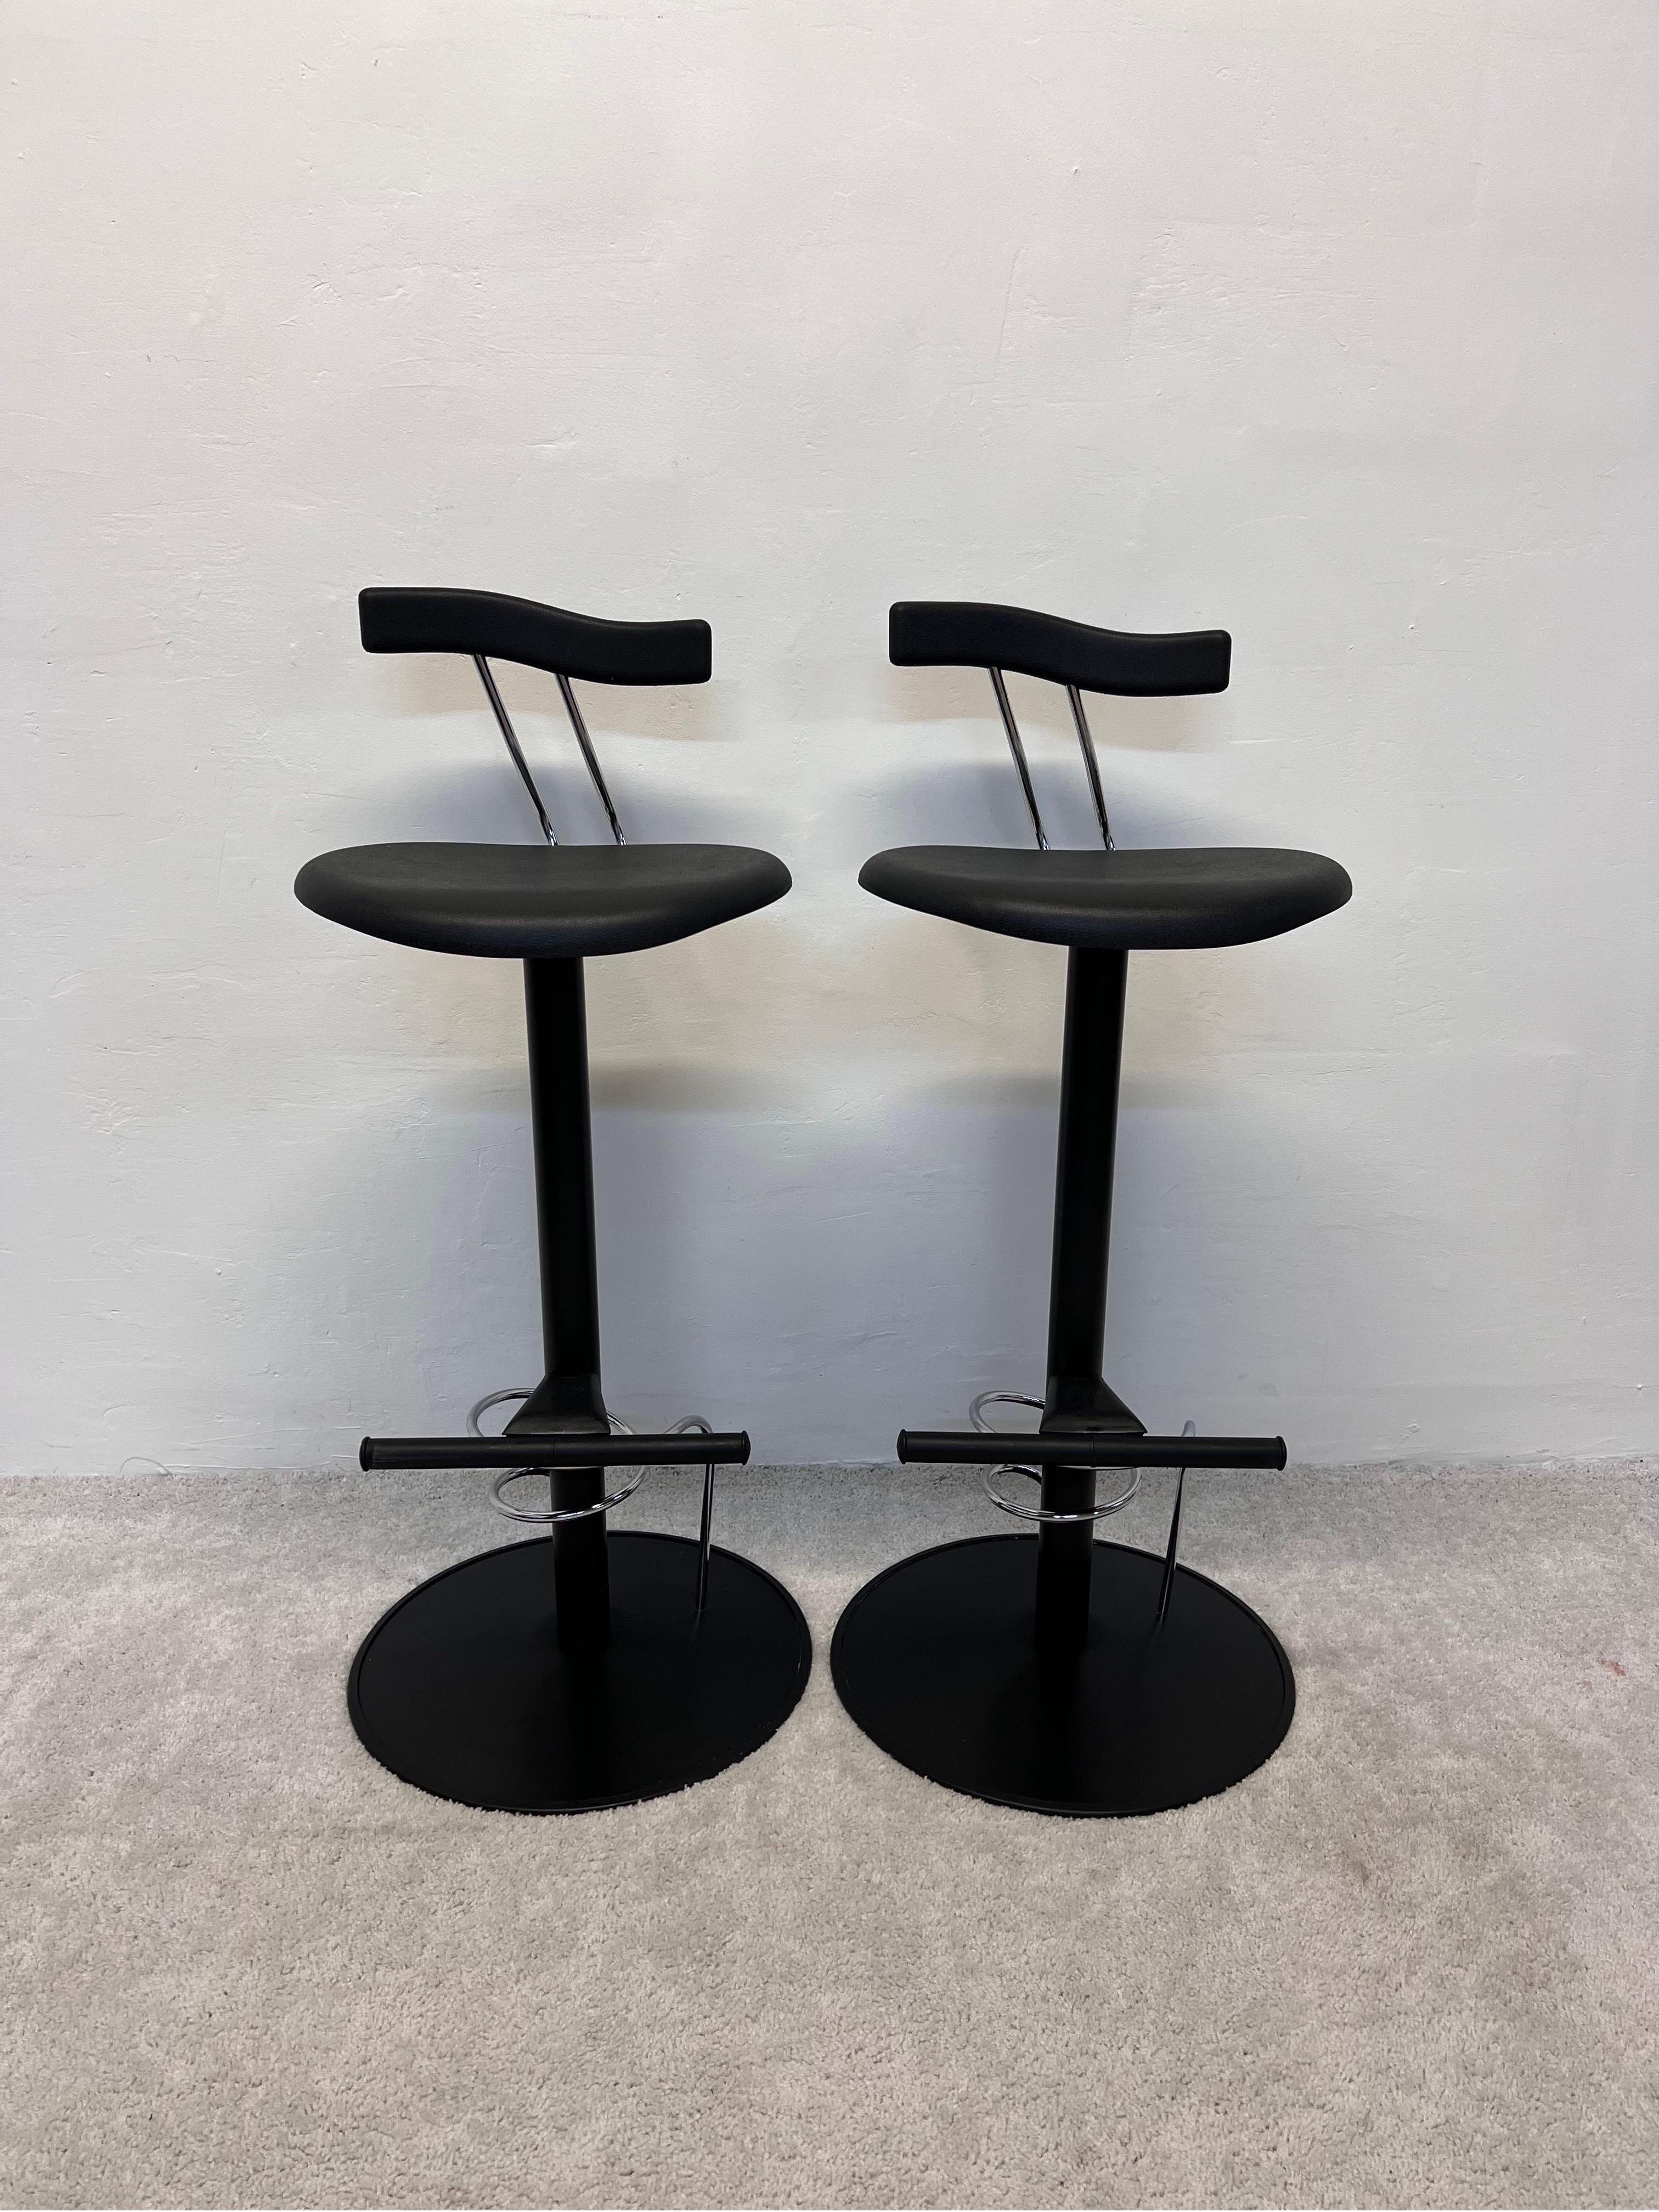 Ein Paar italienische postmoderne Barstühle in Barhöhe, inspiriert von Memphis Milano. Aus schwarz lackiertem Stahl mit Sitz und Rückenlehne aus schwarzem Formgummi. 

 